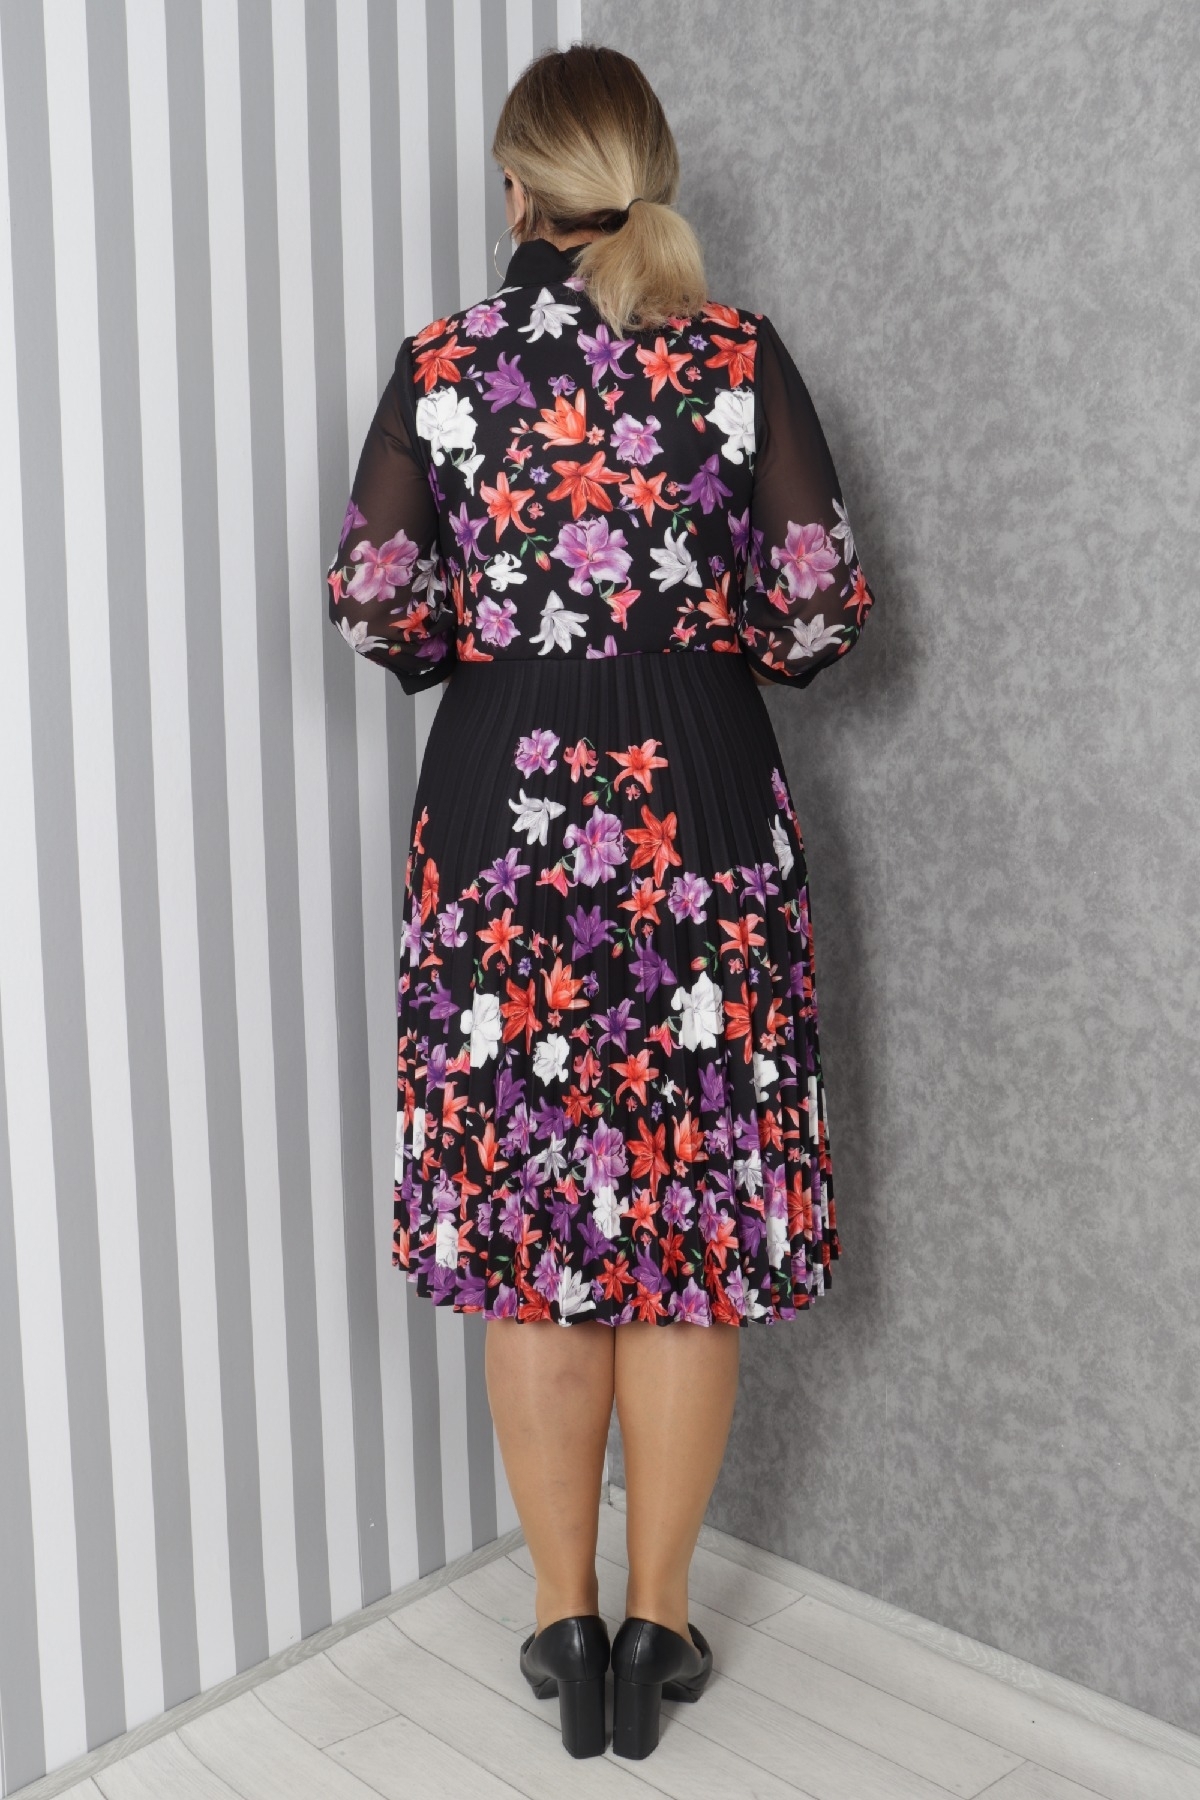 büyük beden renkli çiçek desenli dijital kumaştan şifon detaylı eteği pileli midi boy şık elbise 